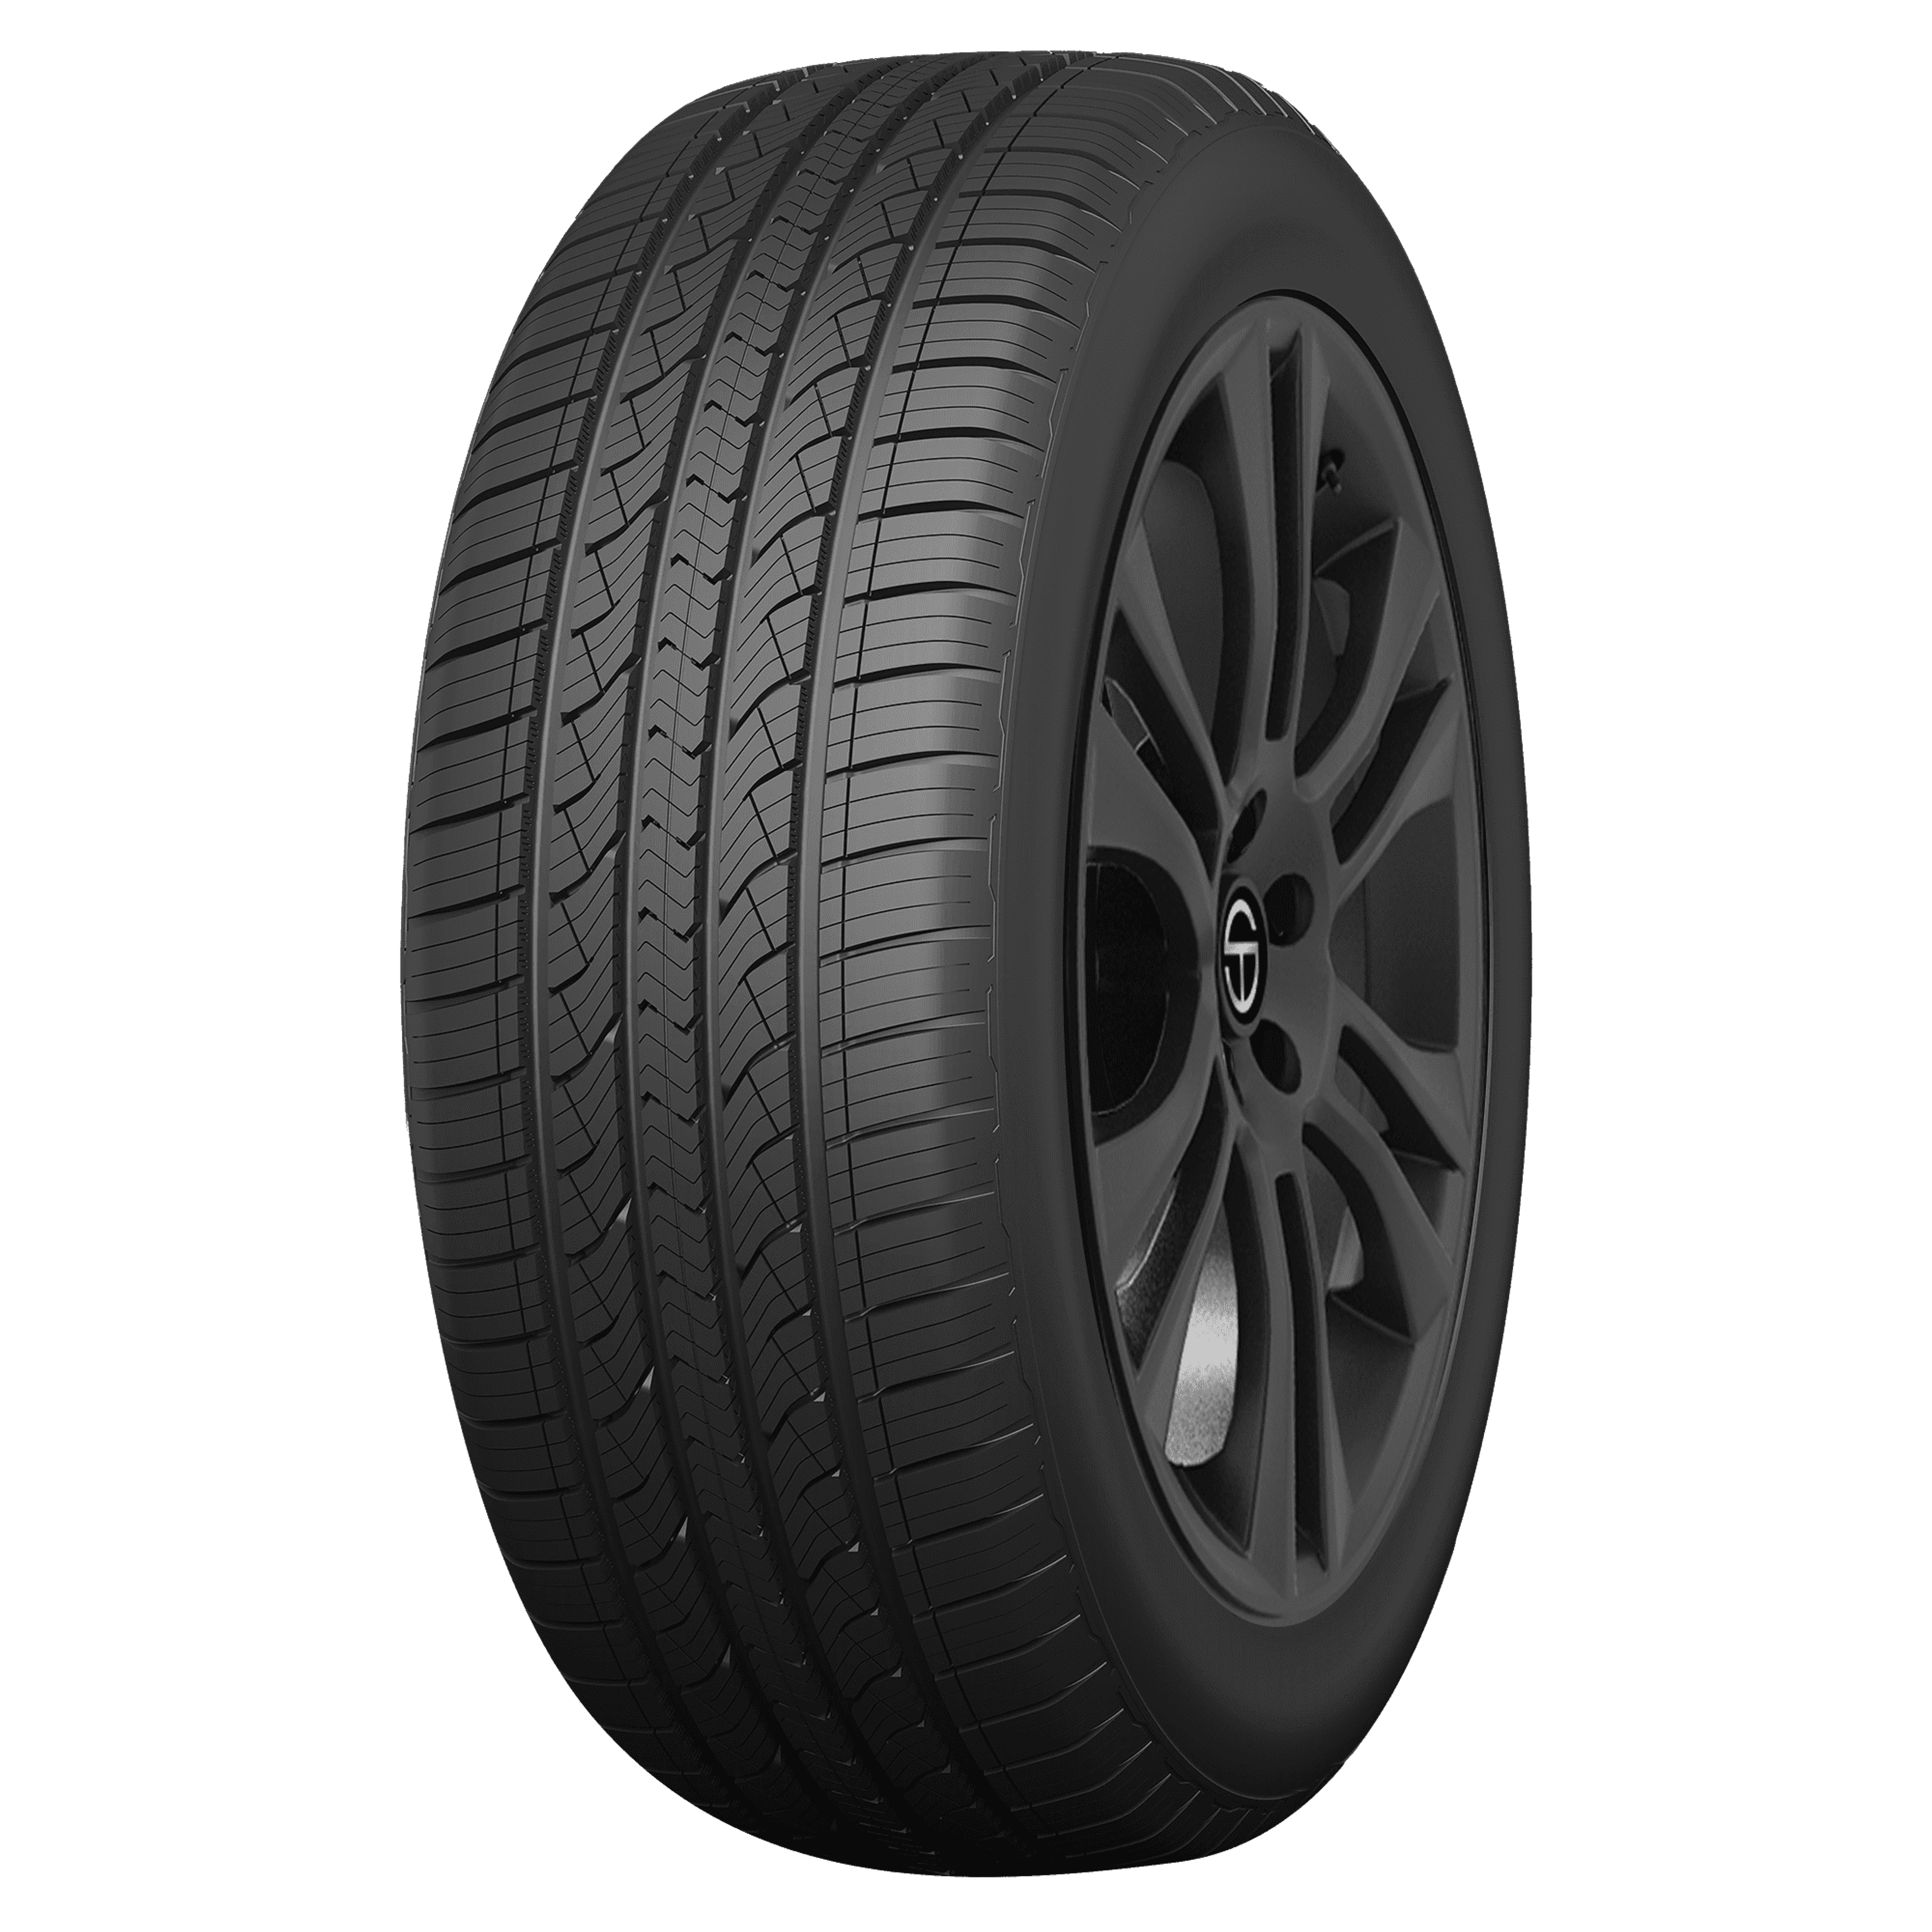 Buy Thunderer Mach I Plus Tires Online